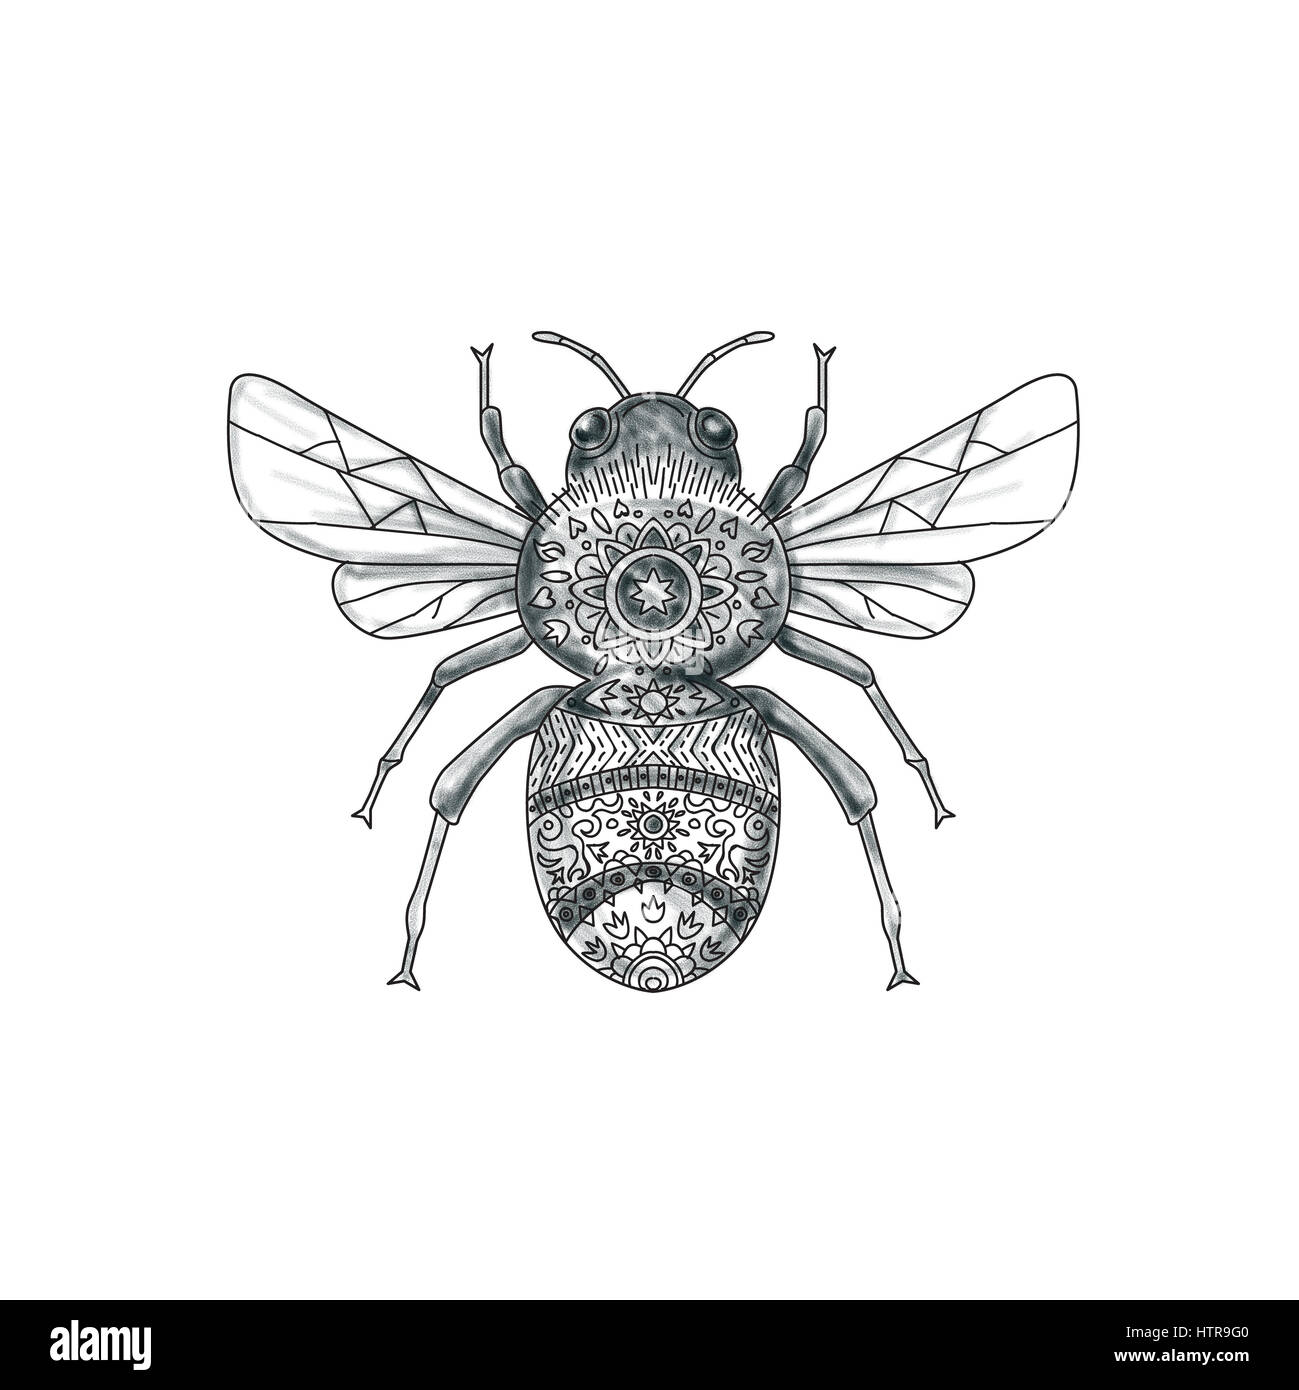 Tattoo-Stil Abbildung der eine Hummel oder Bumble Bee, ein Mitglied der  Gattung Bombus, Teil der Apidae, einer der Biene Familien am isolierten  weißen ba Stockfotografie - Alamy